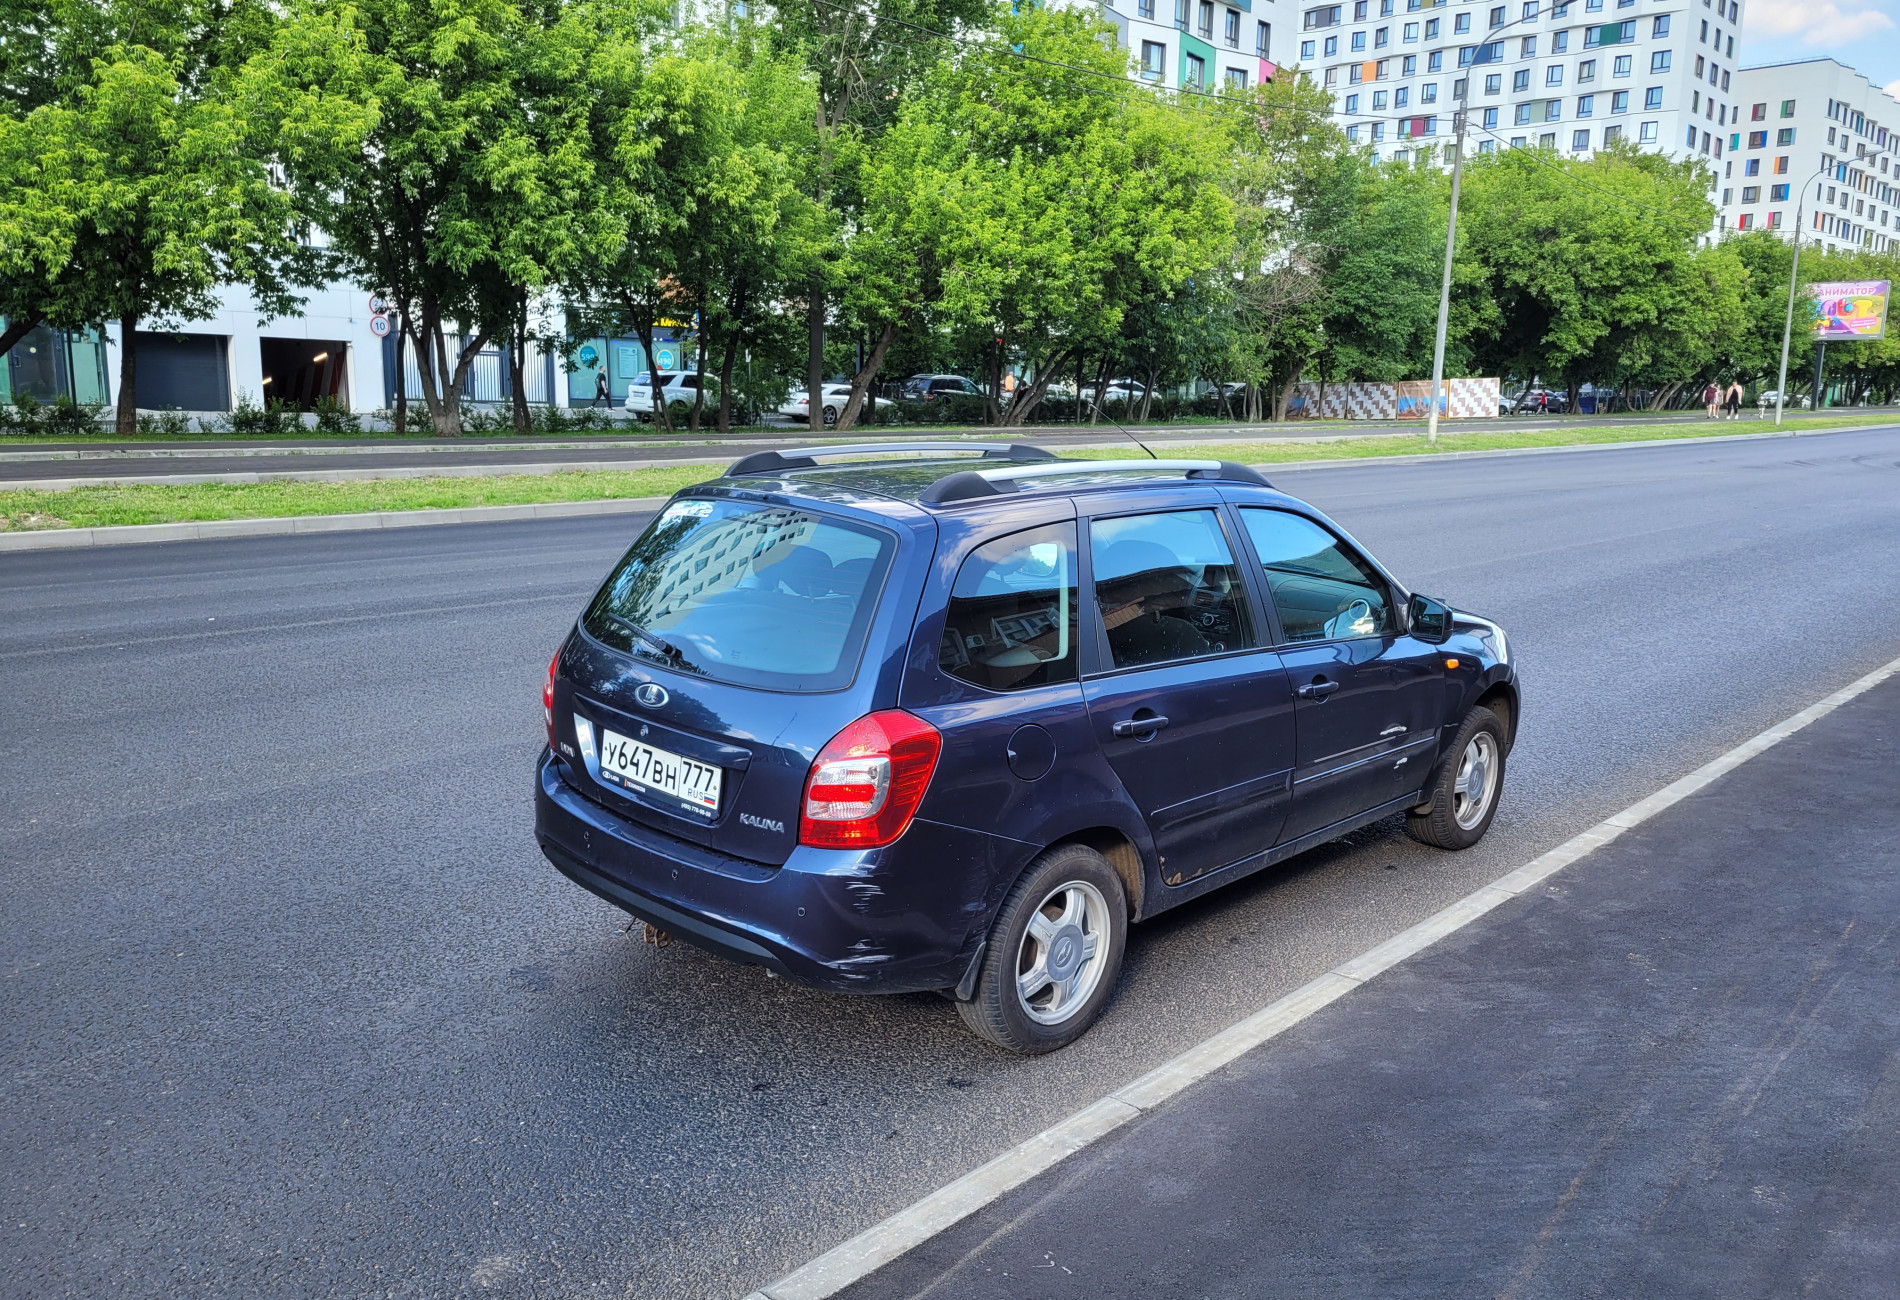 Аренда lada kalina эконом класса 2014 года в городе Москва Баррикадная от 1400 руб./сутки, передний привод, двигатель: бензин, объем 1.6 литров, ОСАГО (Впишу в полис), без водителя, недорого, вид 4 - RentRide